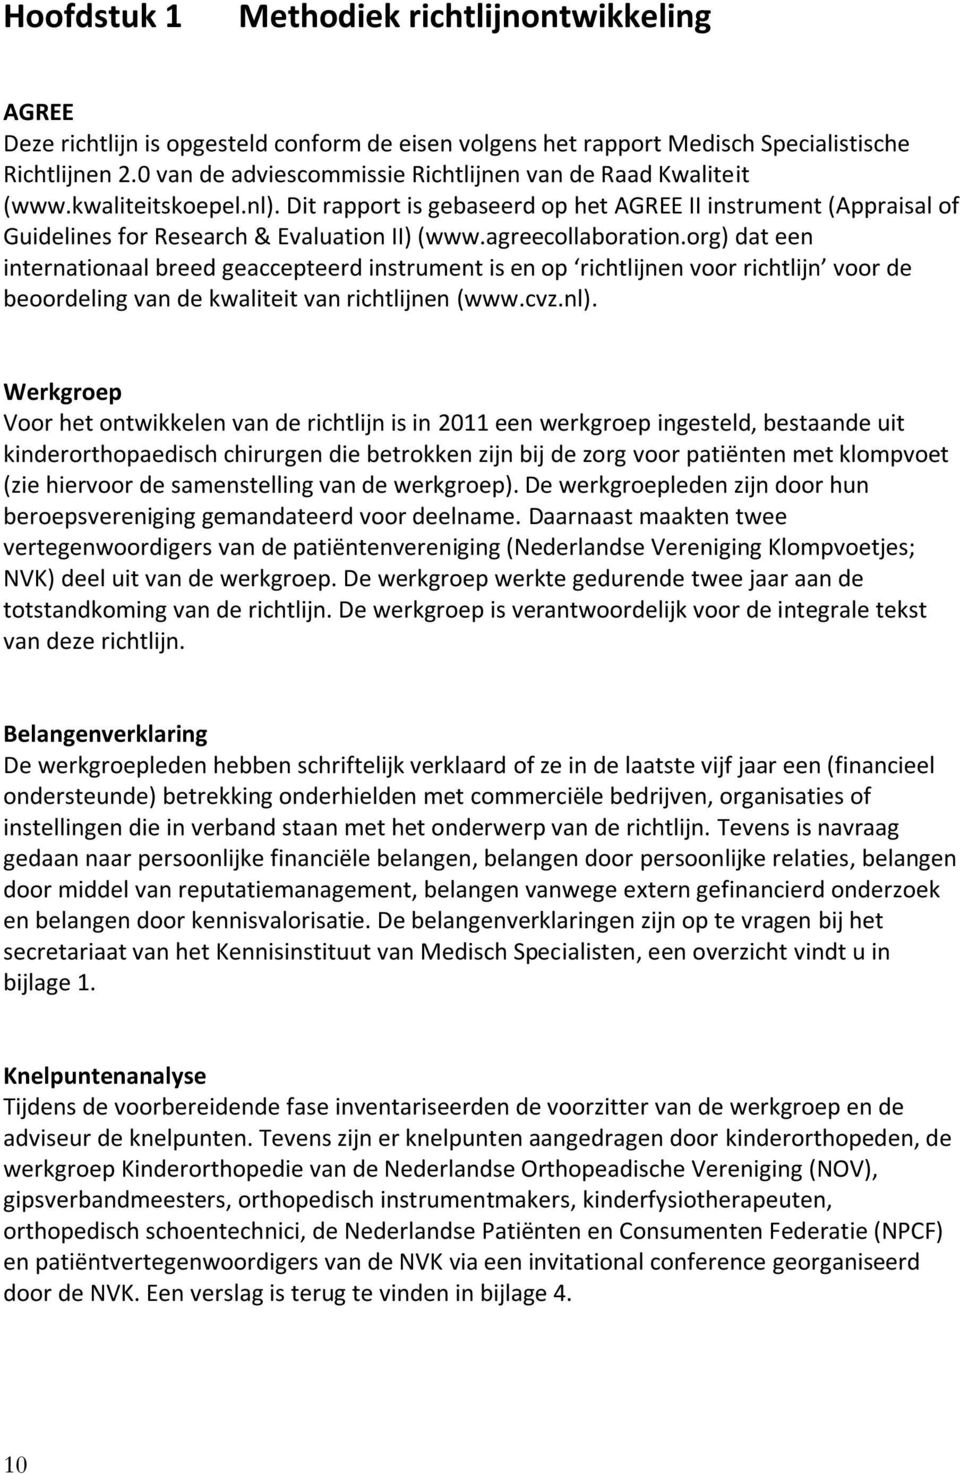 agreecollaboration.org) dat een internationaal breed geaccepteerd instrument is en op richtlijnen voor richtlijn voor de beoordeling van de kwaliteit van richtlijnen (www.cvz.nl).